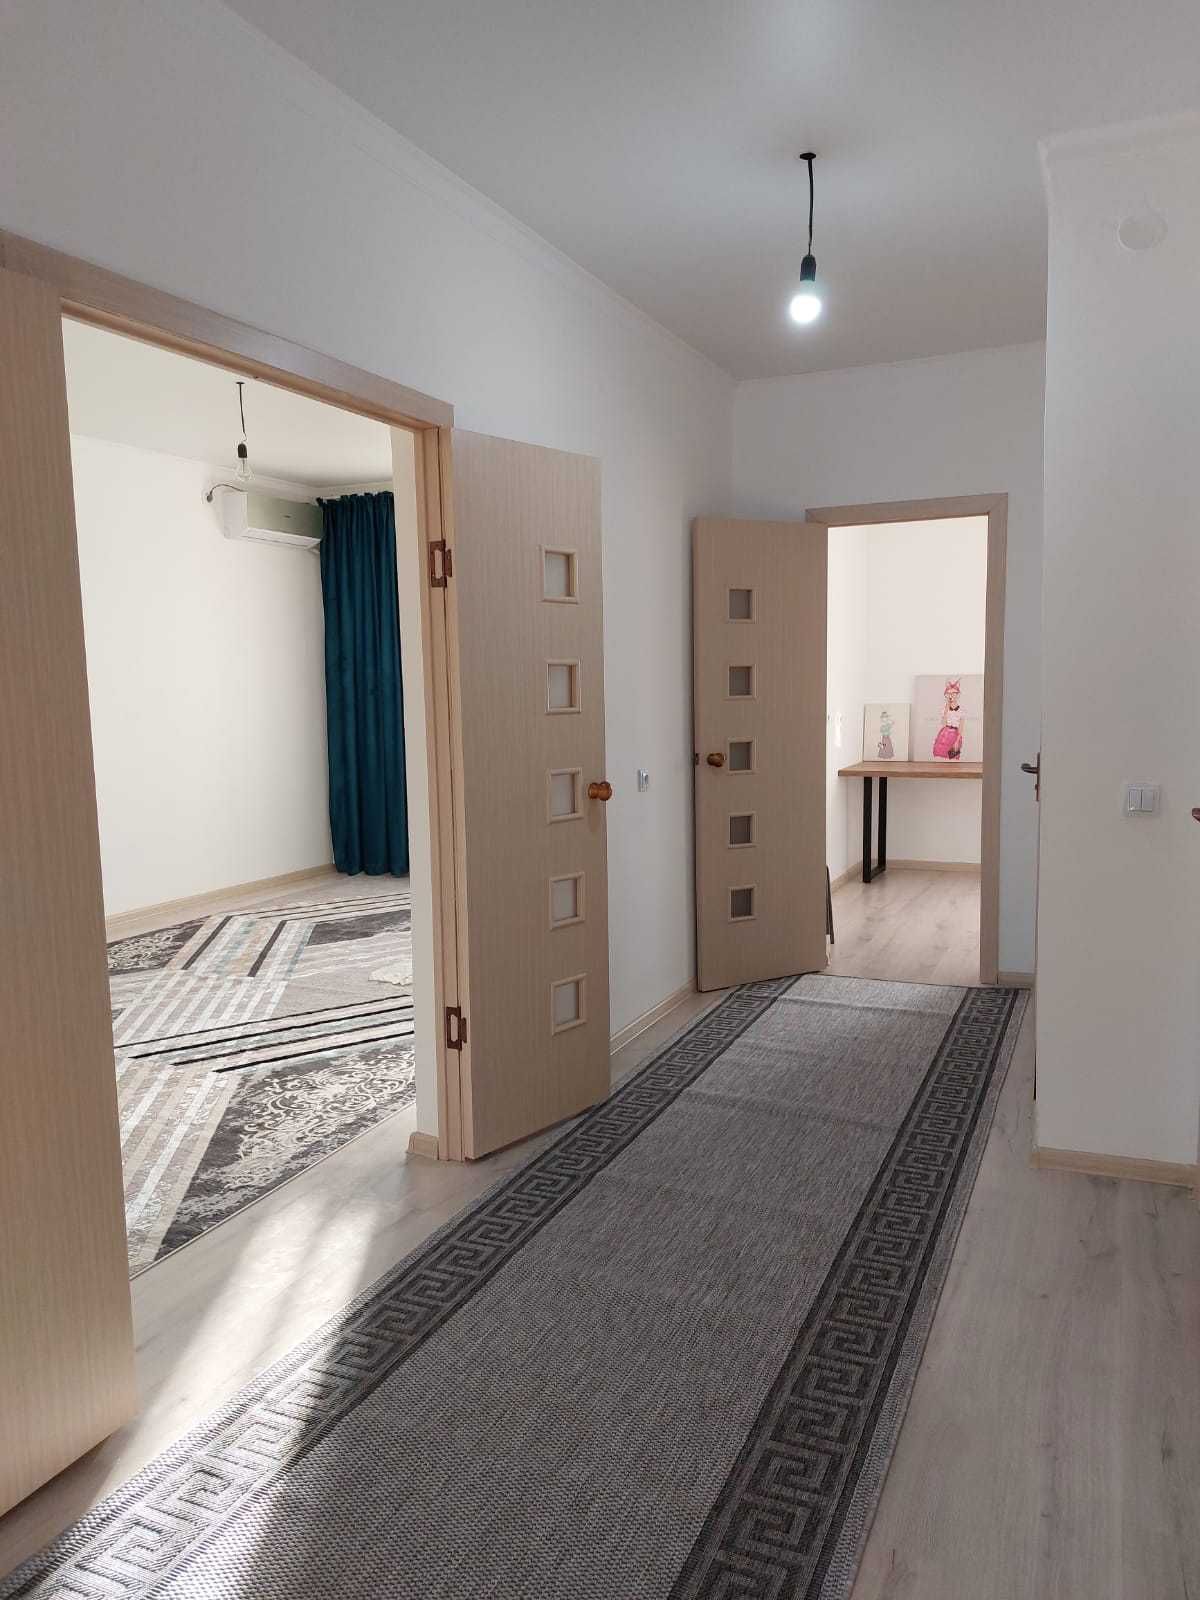 Сдается 3 комнатная квартира в районе МКР Астана (новый дом)